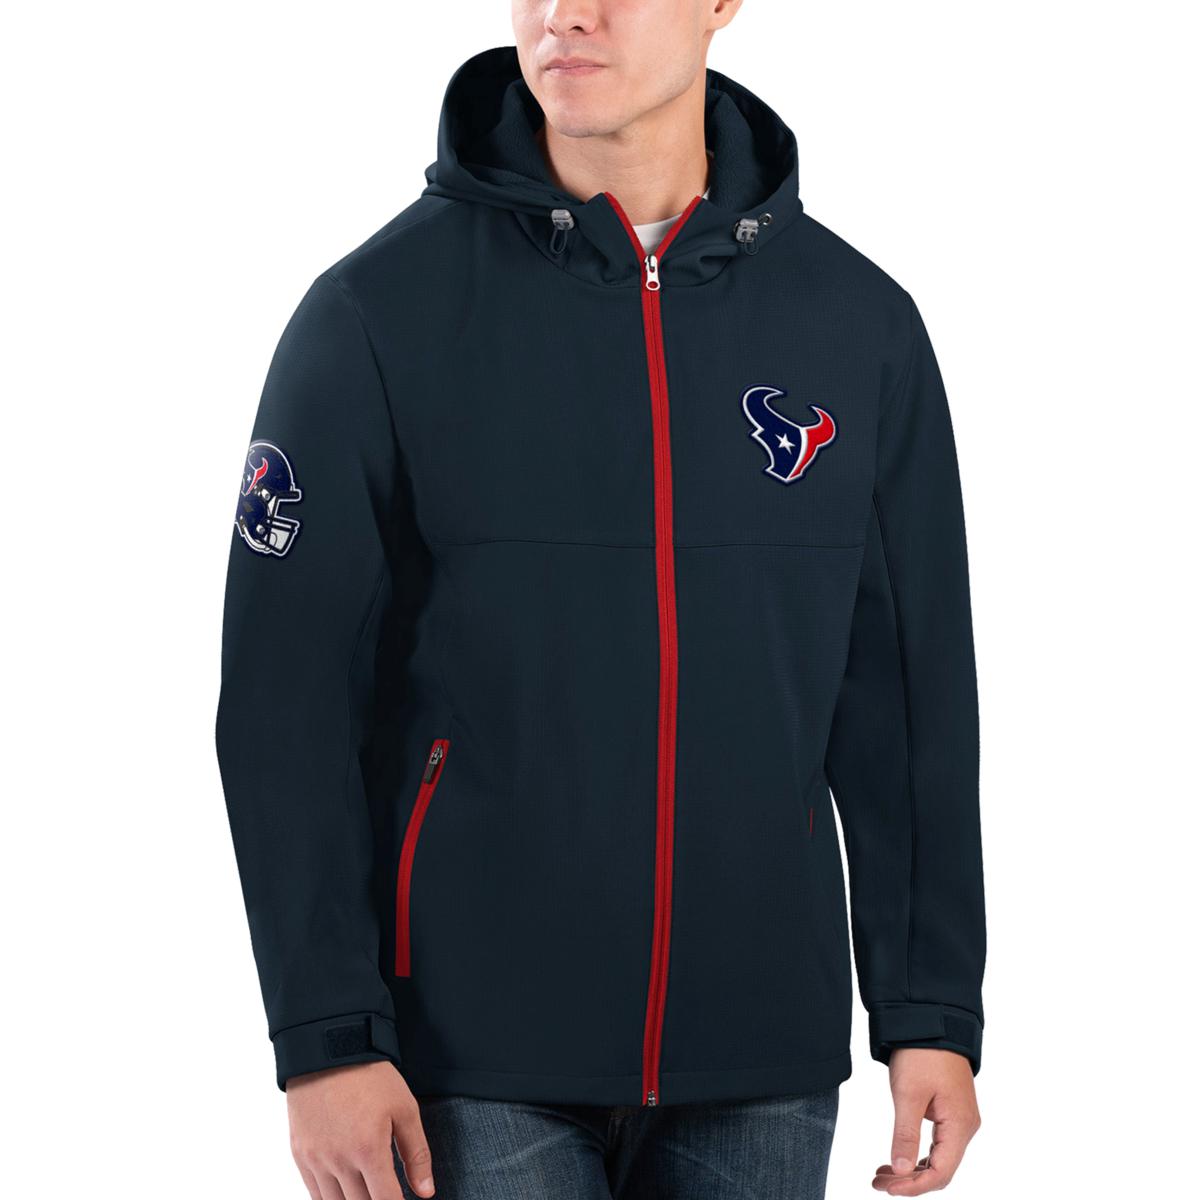 Officially Licensed NFL Full-Zip Hooded Jacket - Houston Texans | HSN